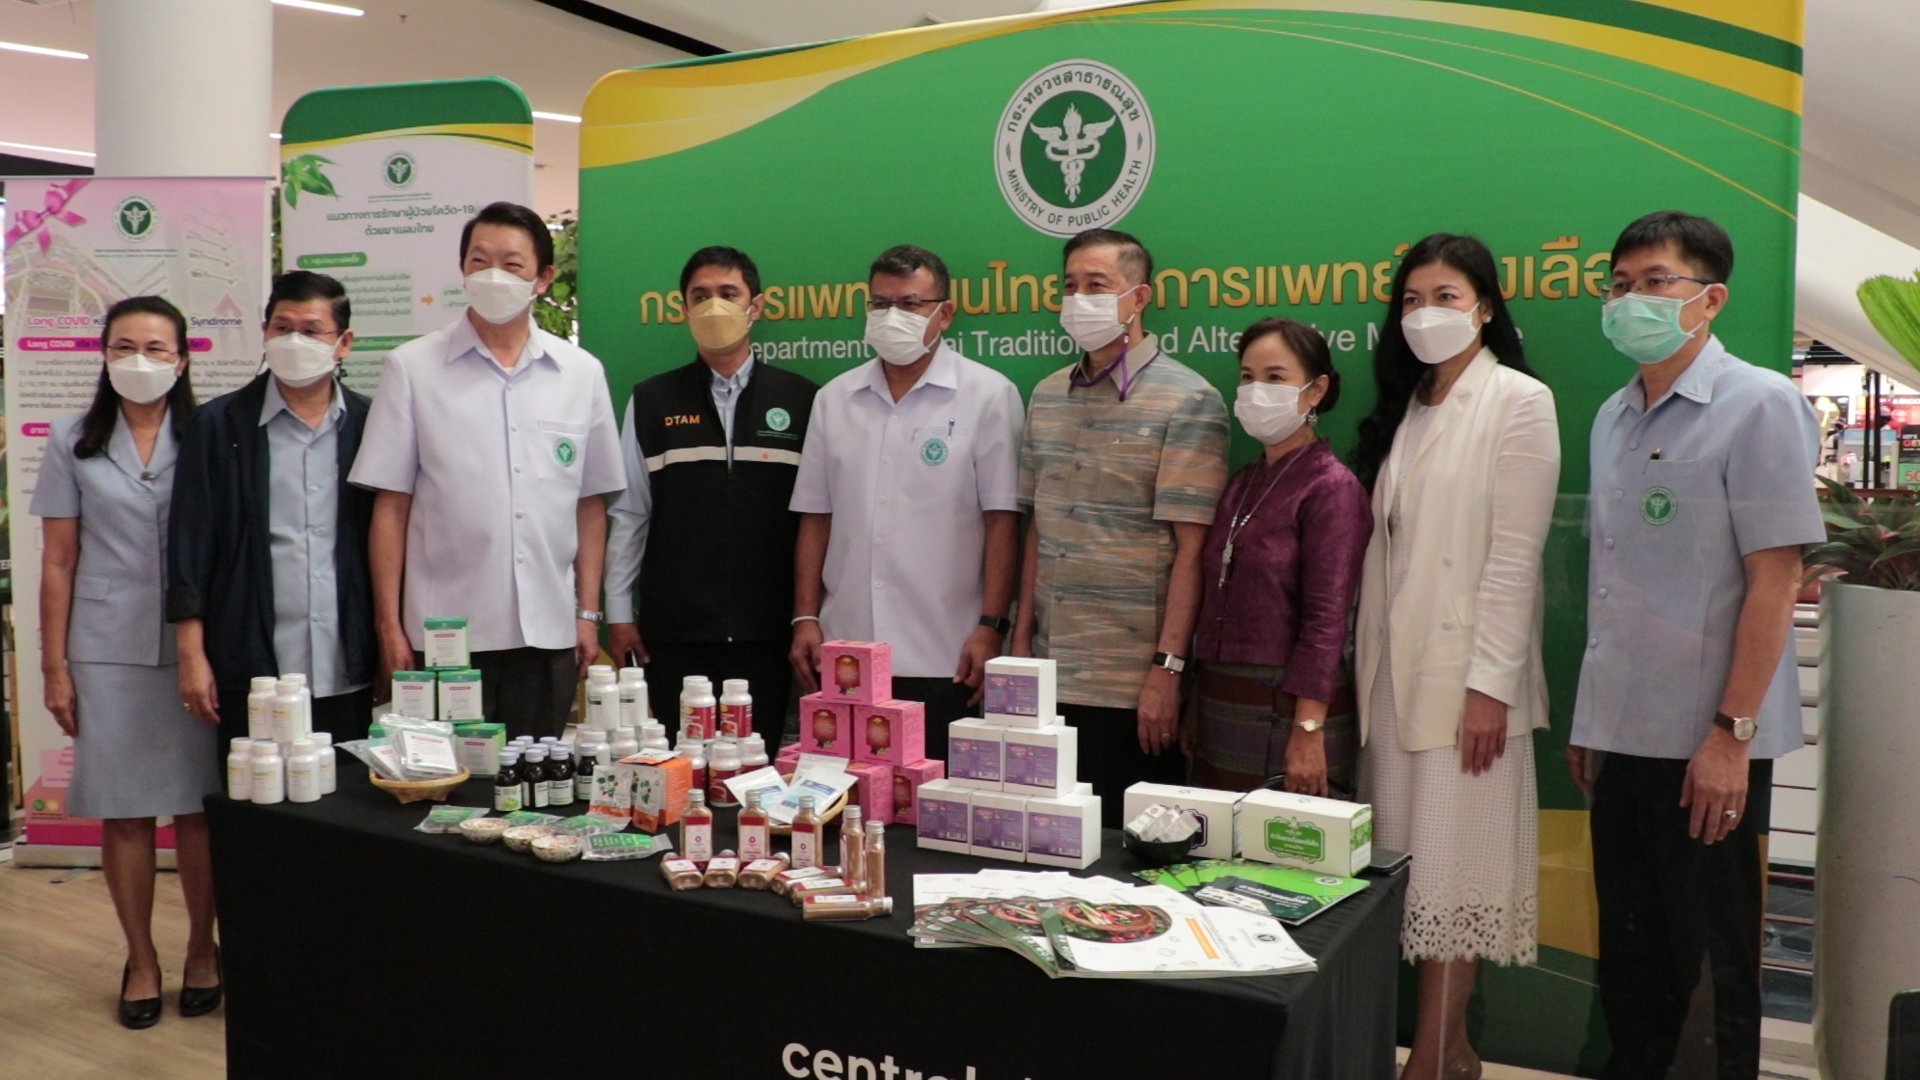 แพทย์แผนไทยเปิดให้บริการรักษาผู้ป่วยอาการหลังติดเชื้อLong COVID-19 ด้วยสมุนไพรไทยแห่งแรกของภาคเหนือ